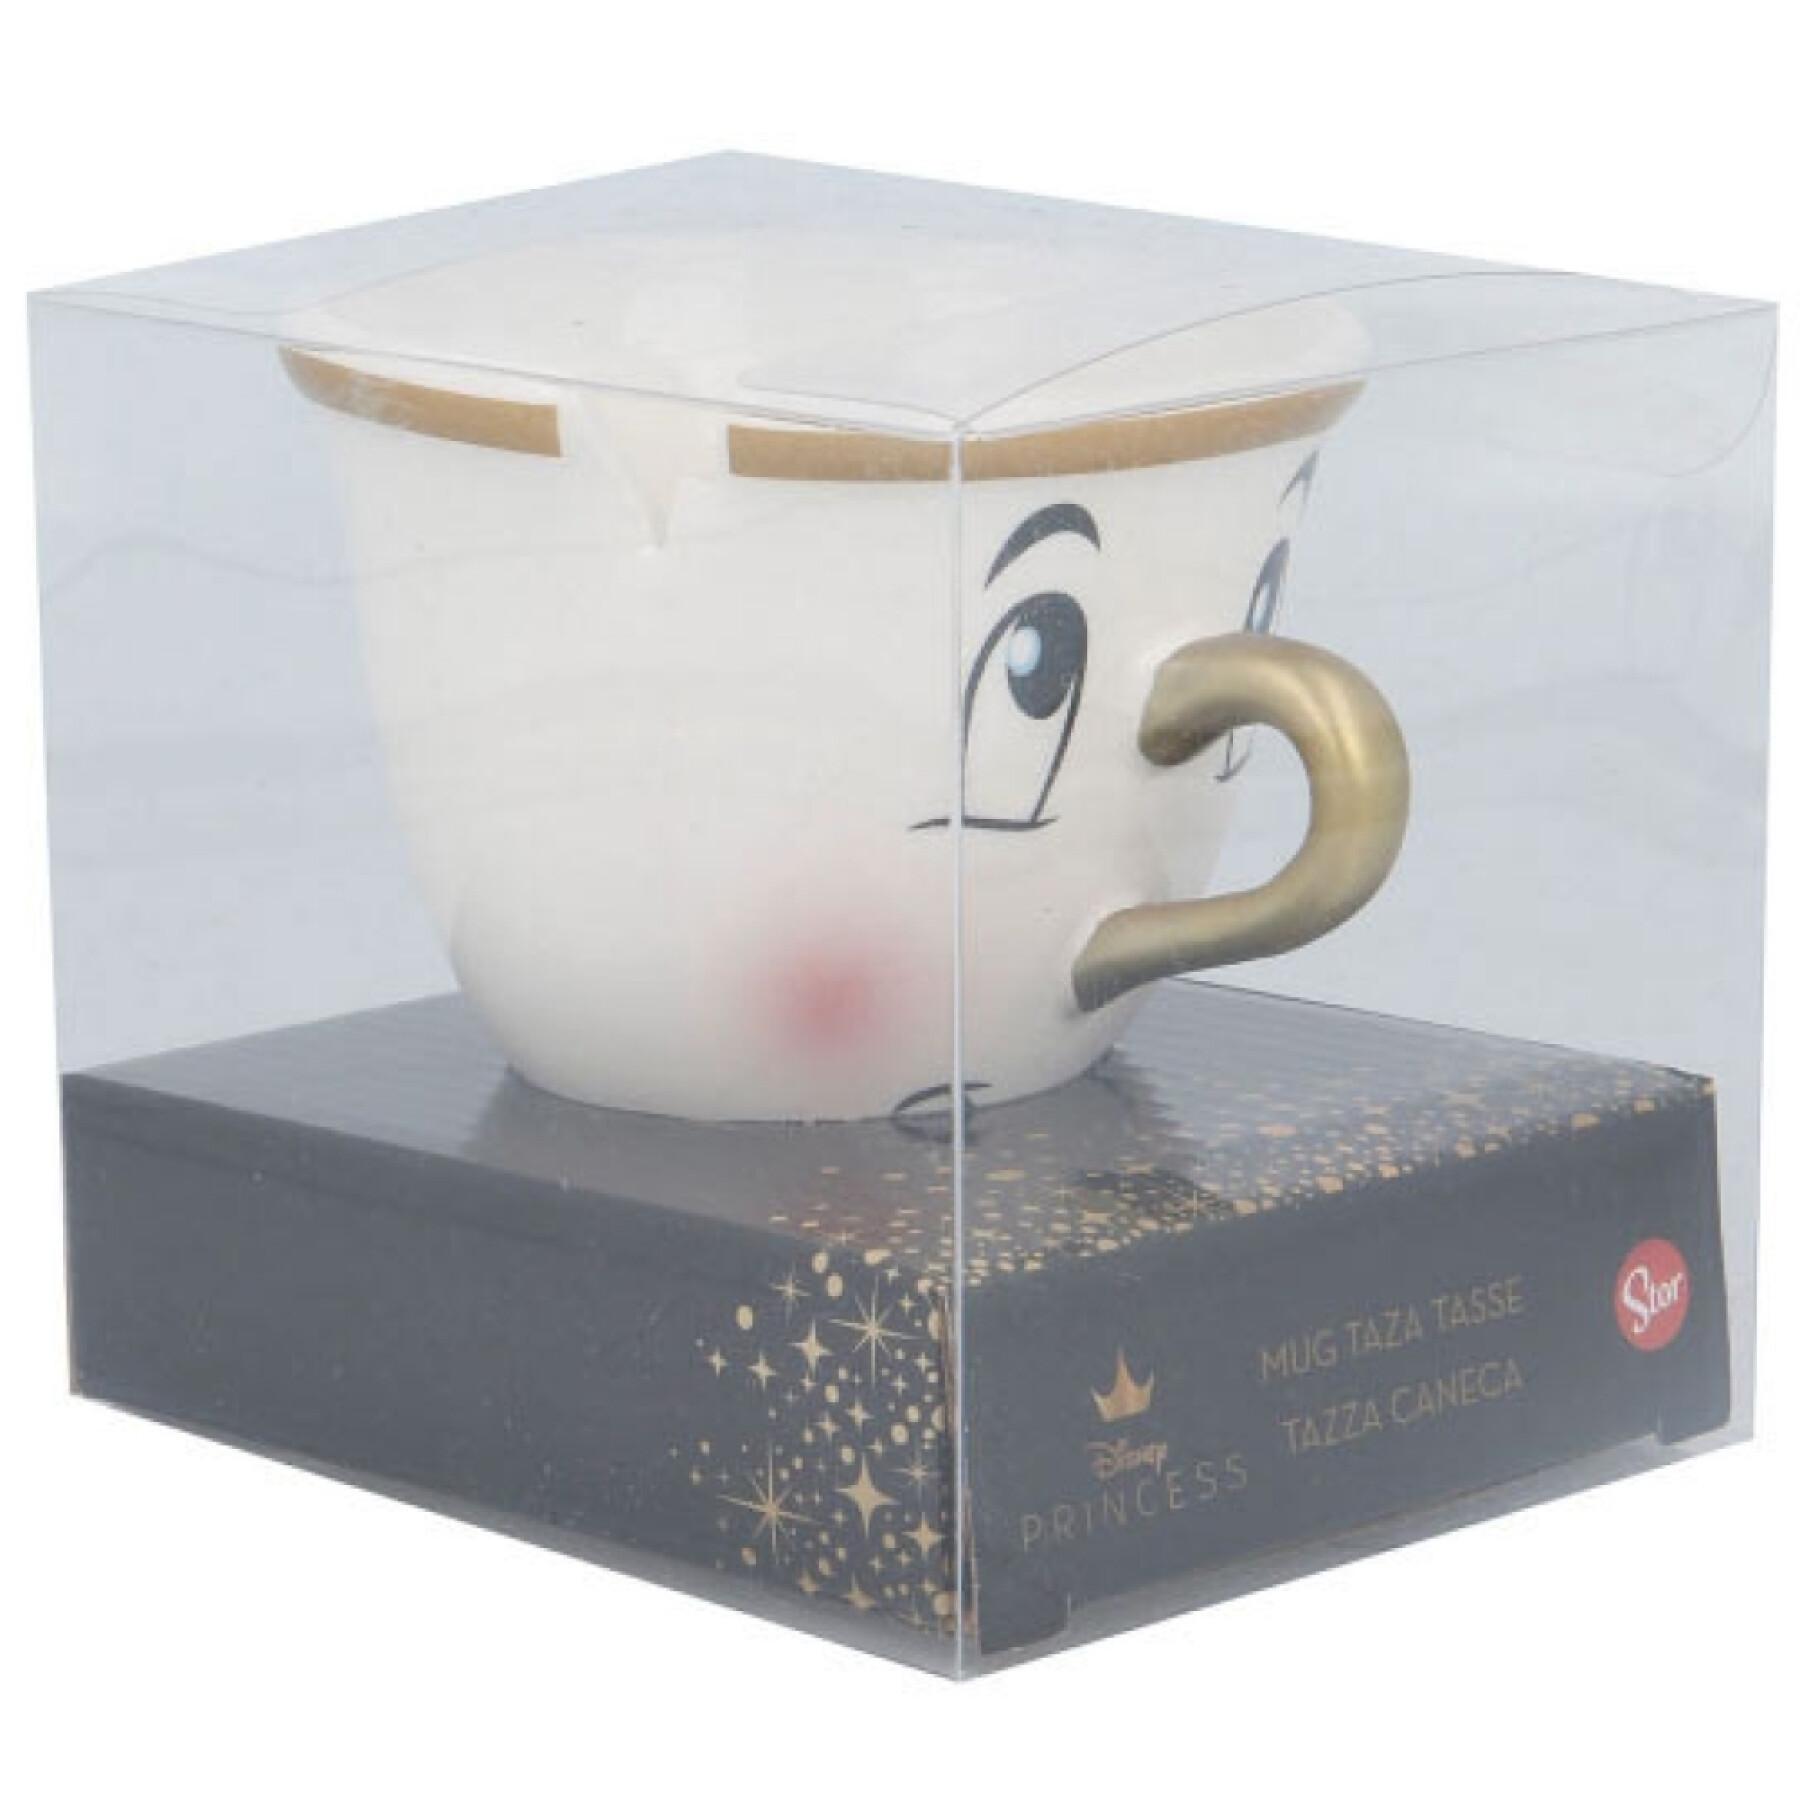 Conjunto de presentes Beauty and the Beast ceramic mug set Disney 3D